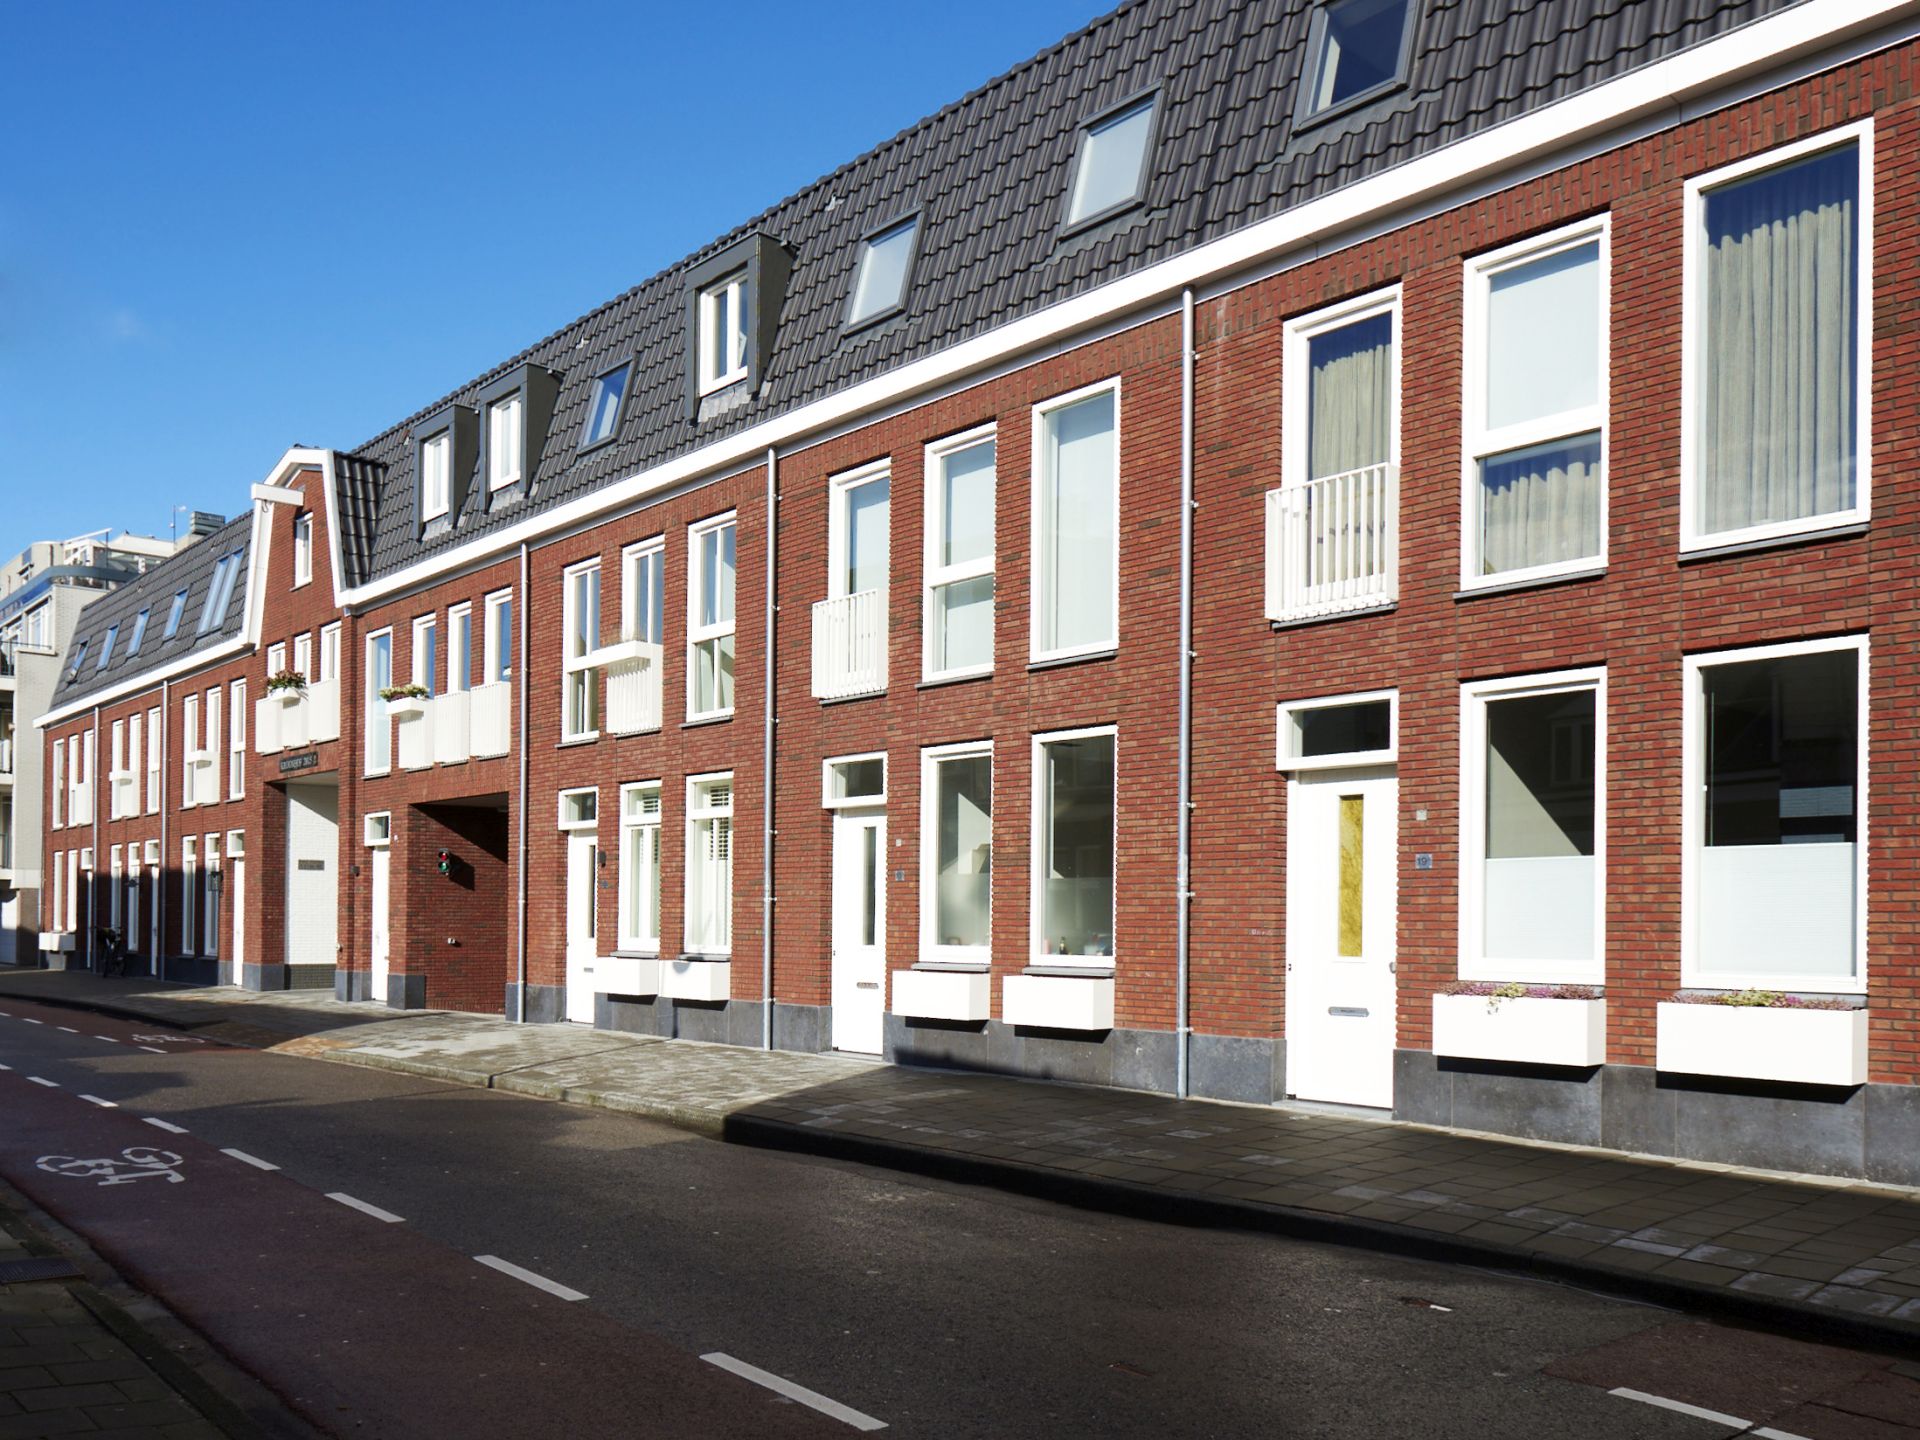 ENZO architectuur N interieur - Haarlemmermeer - Silo - Burgerveen - nieuwbouw - zakelijk - woonblok - woonwijk - hofje - hofwoningen - Haarlem